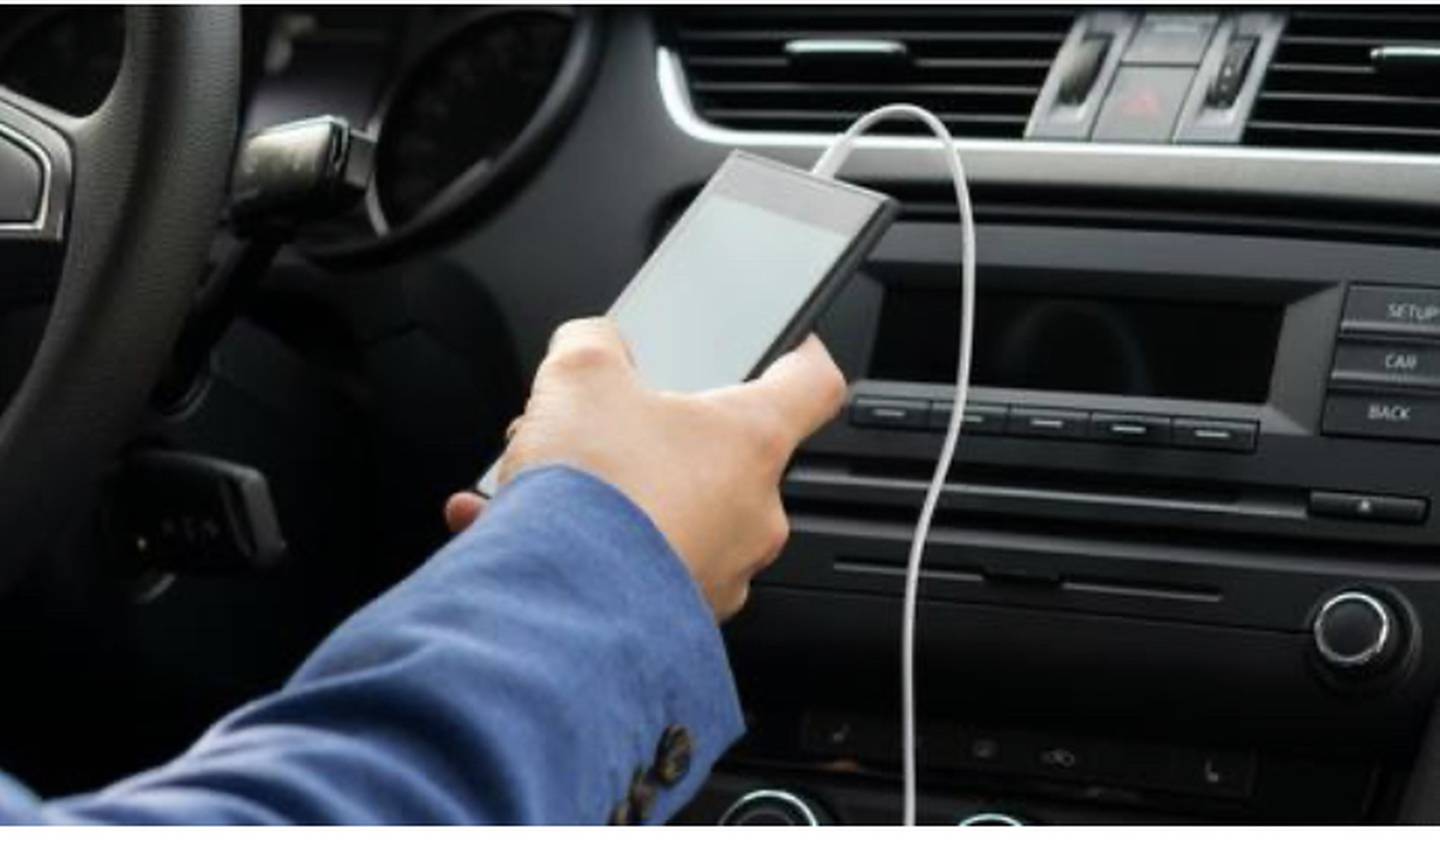 ¿Por qué no debe cargar su celular en el automóvil?